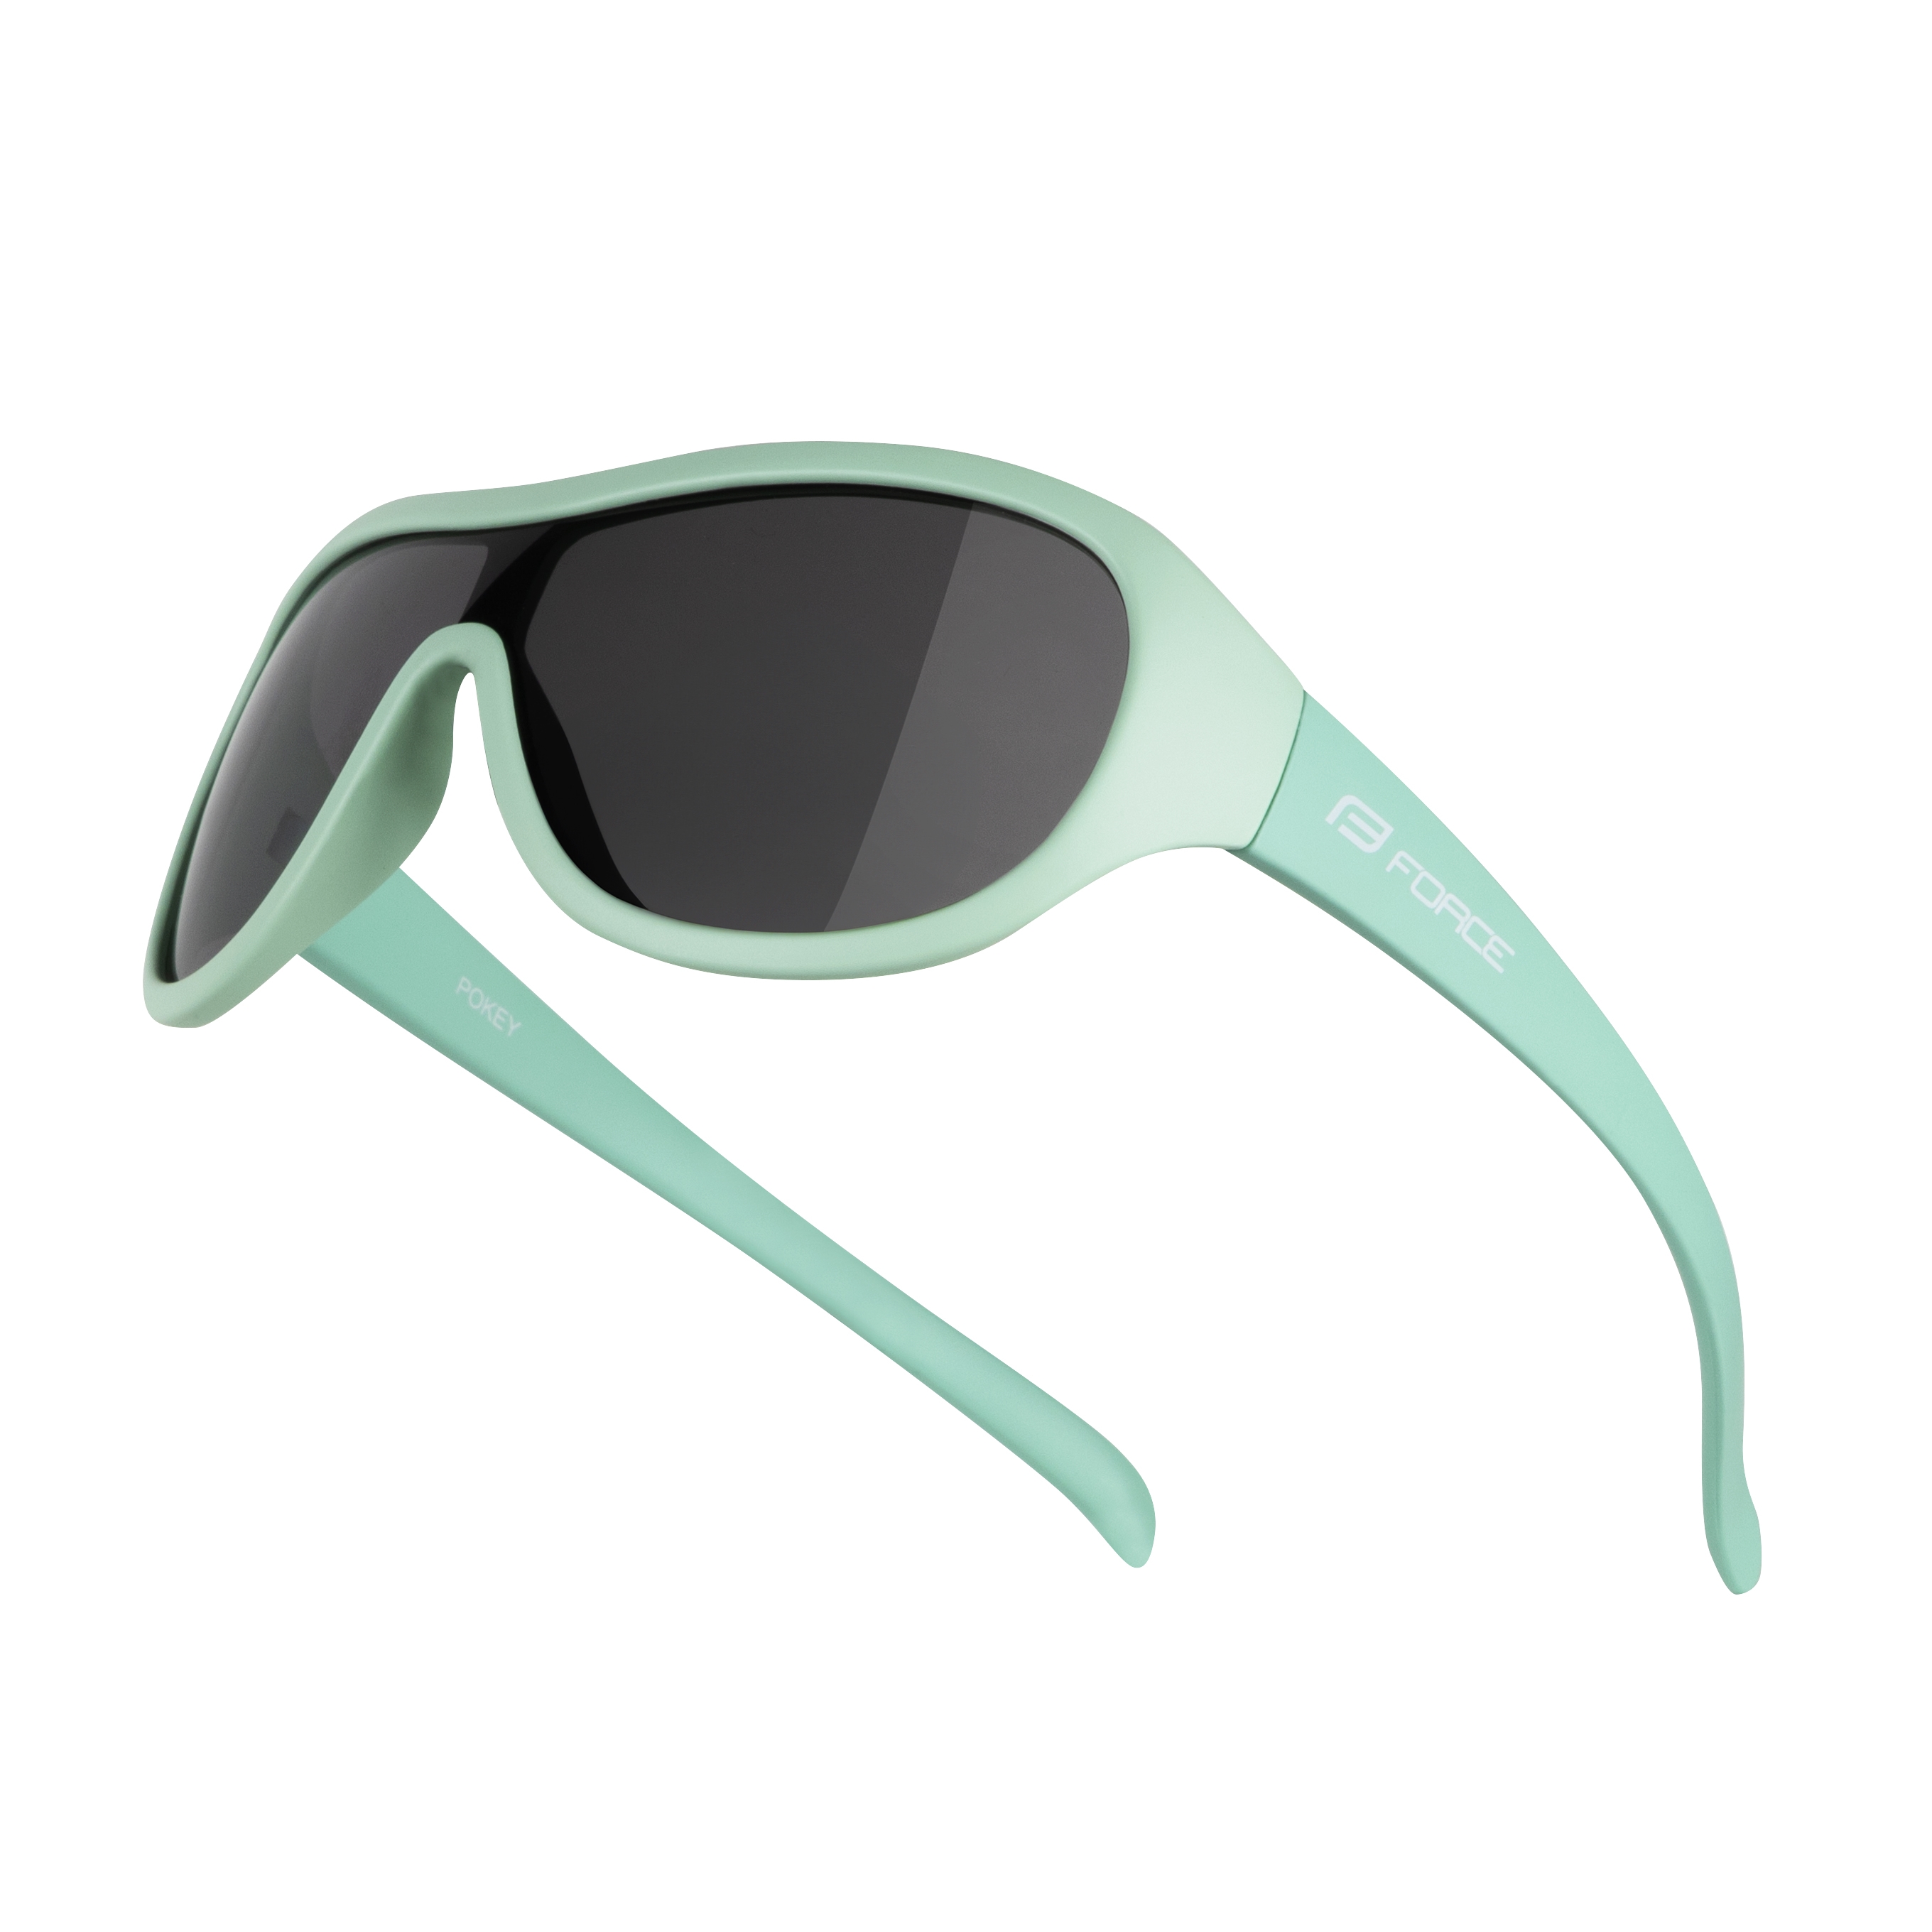 brýle FORCE POKEY dětské, mint, černé sklo Barva: Zelená, určení: dětské, skla: polykarbonátová